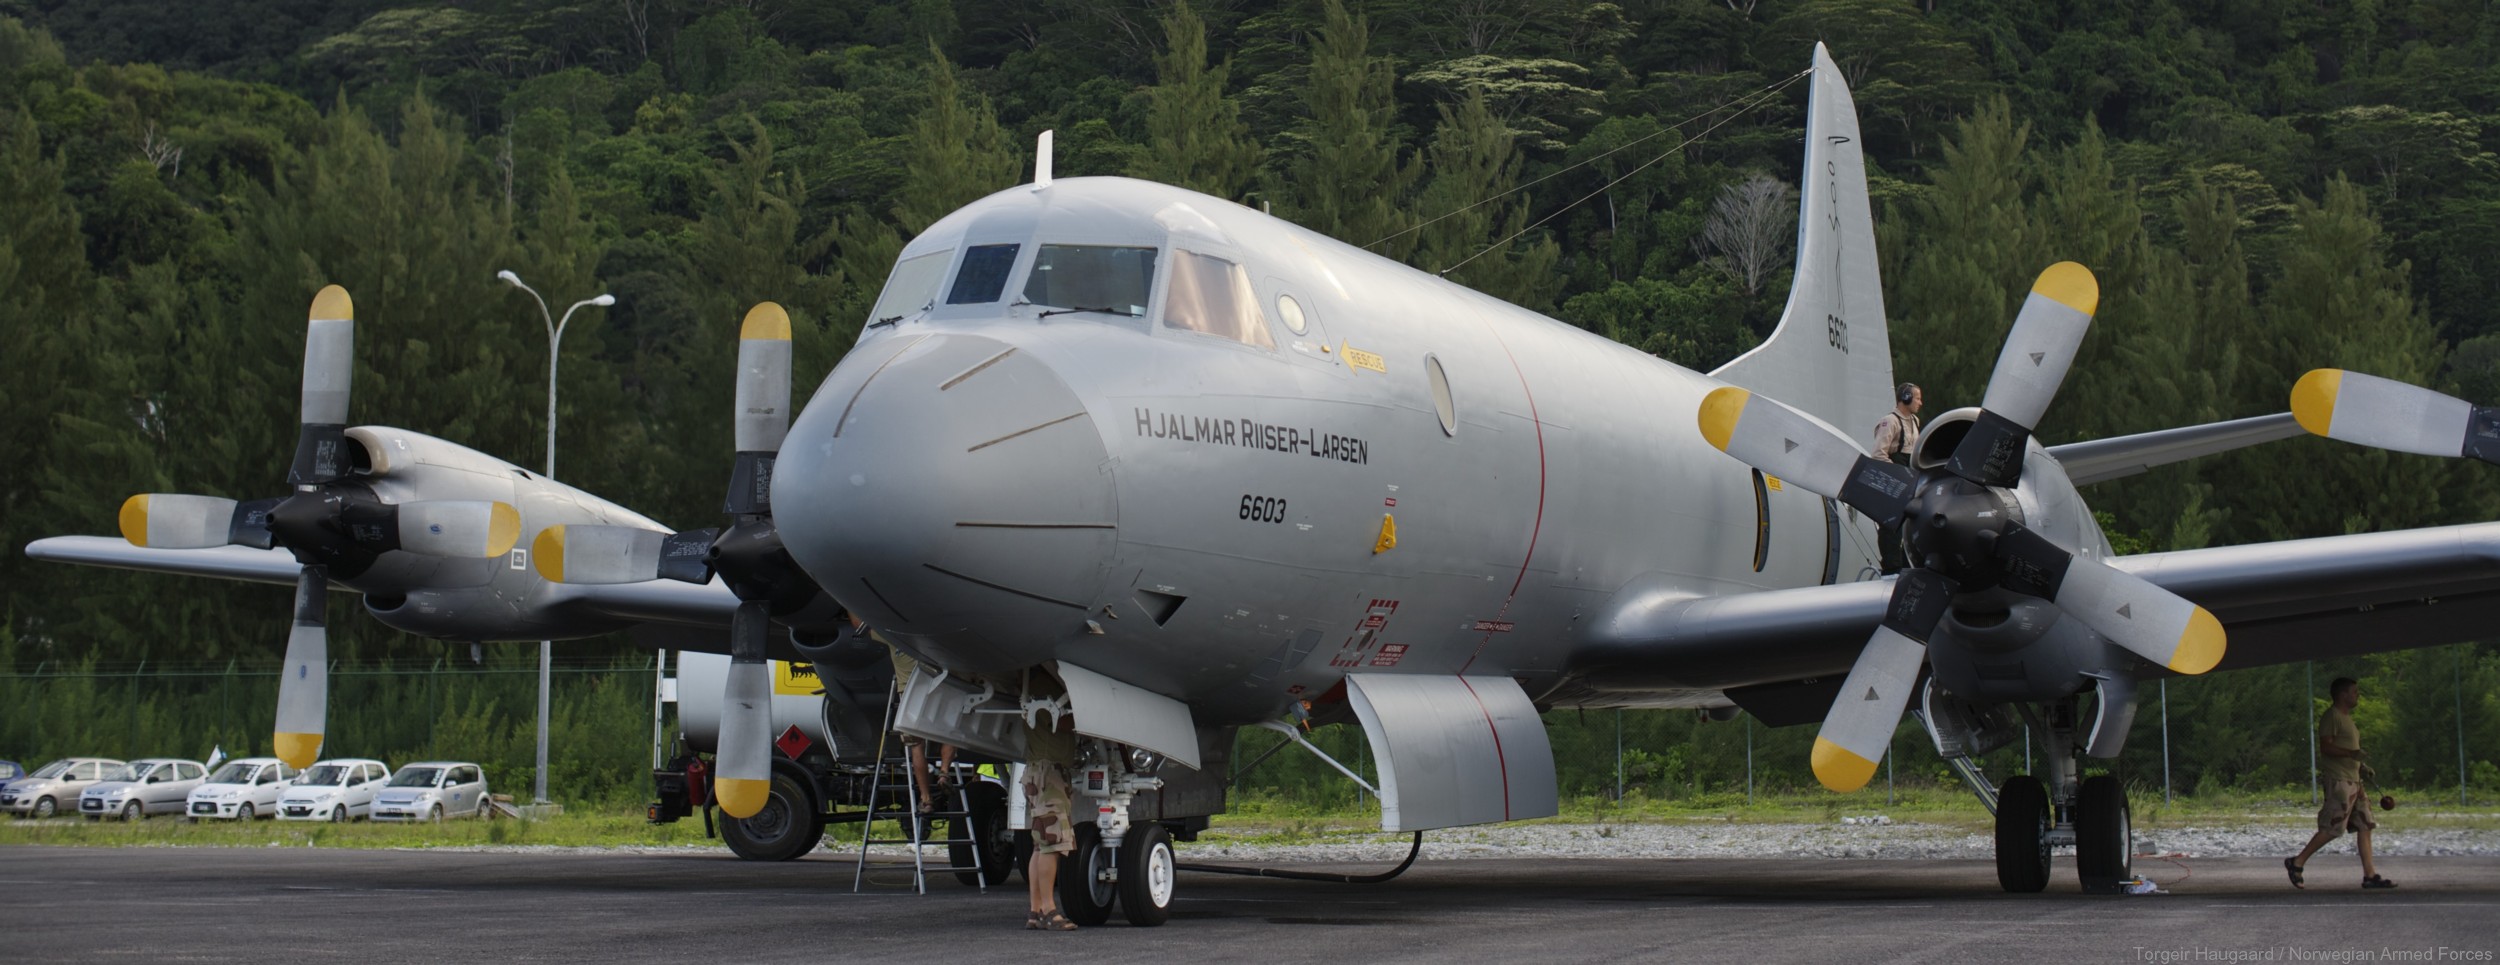 lockheed p-3n orion hjalmar riiser larsen 6603 patrol royal norwegian air force luftforsvaret 07